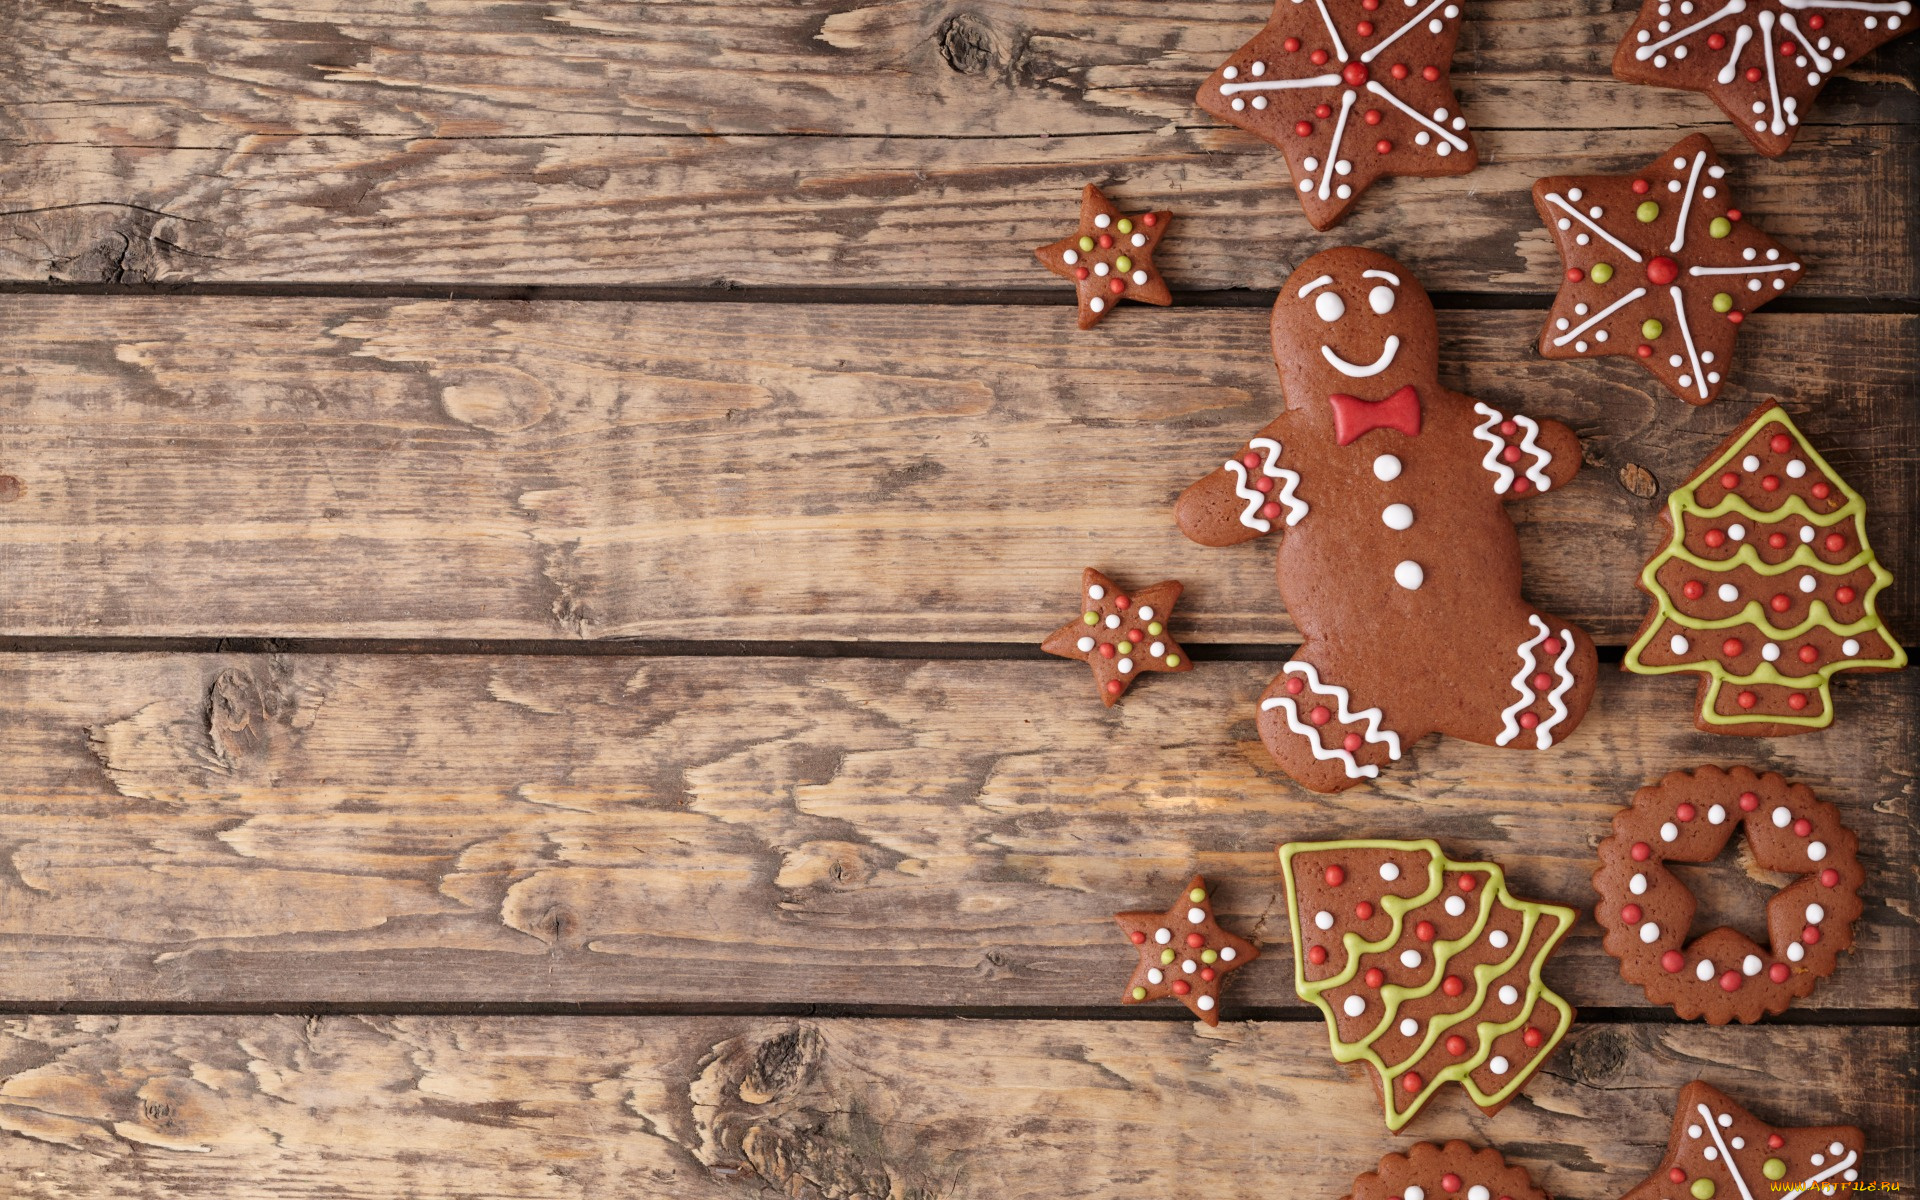 праздничные, угощения, xmas, новый, год, выпечка, merry, gingerbread, сладкое, печенье, глазурь, рождество, christmas, cookies, decoration